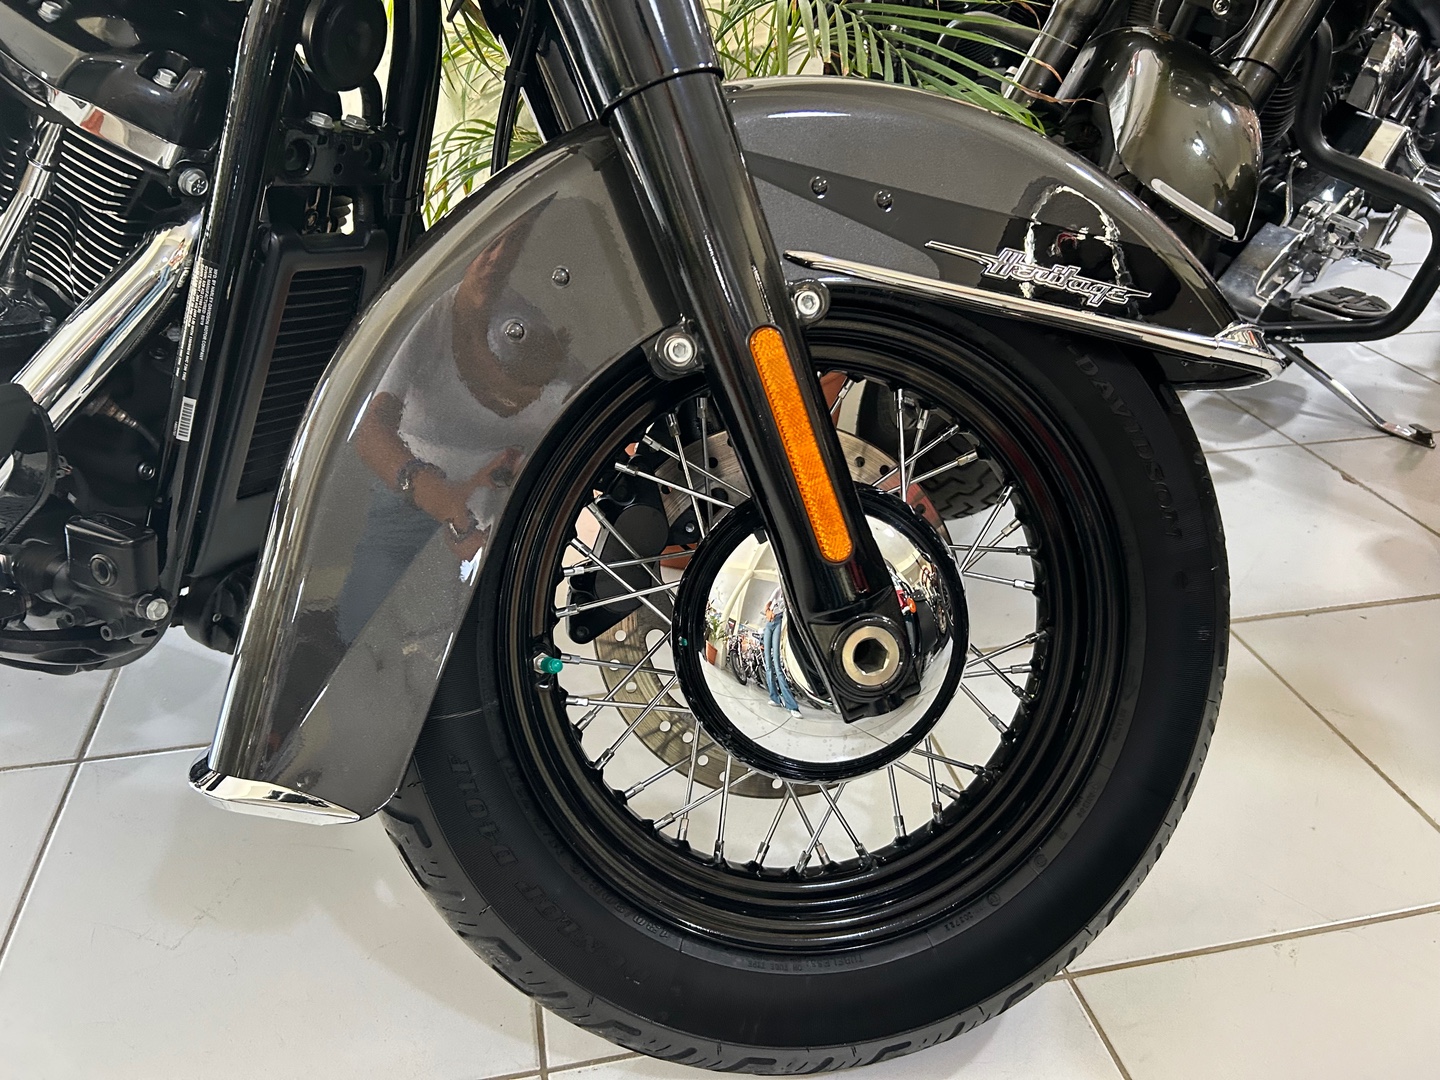 motores y pasolas - Harley Davidson Heritage 114 año 2019 2